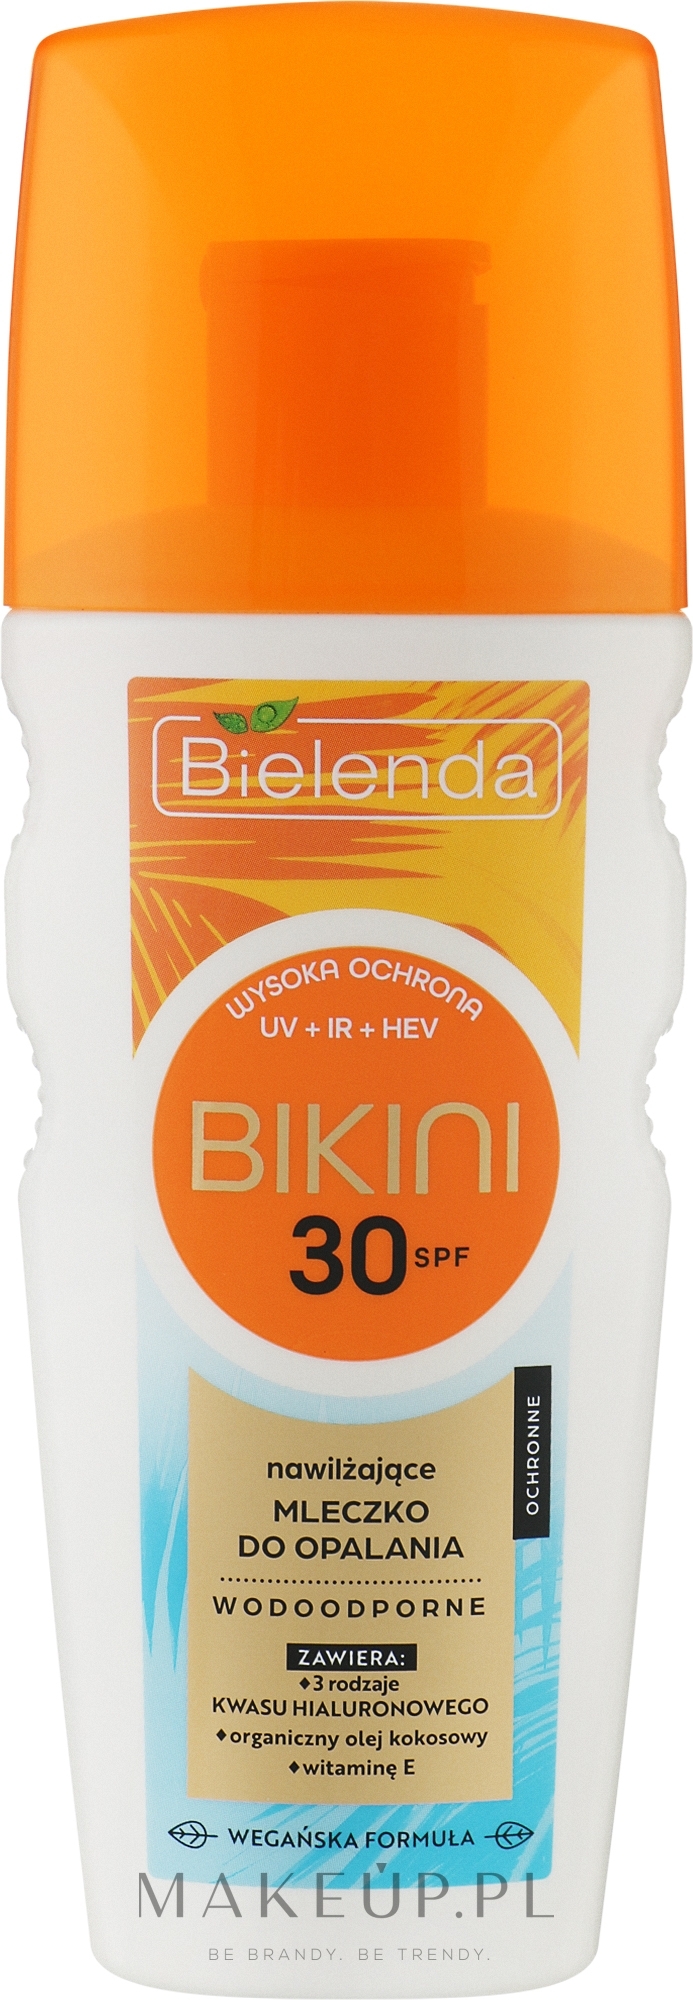 Nawilżające mleczko do opalania z filtrem przeciwsłonecznym SPF 30 - Bielenda Bikini — Zdjęcie 175 ml